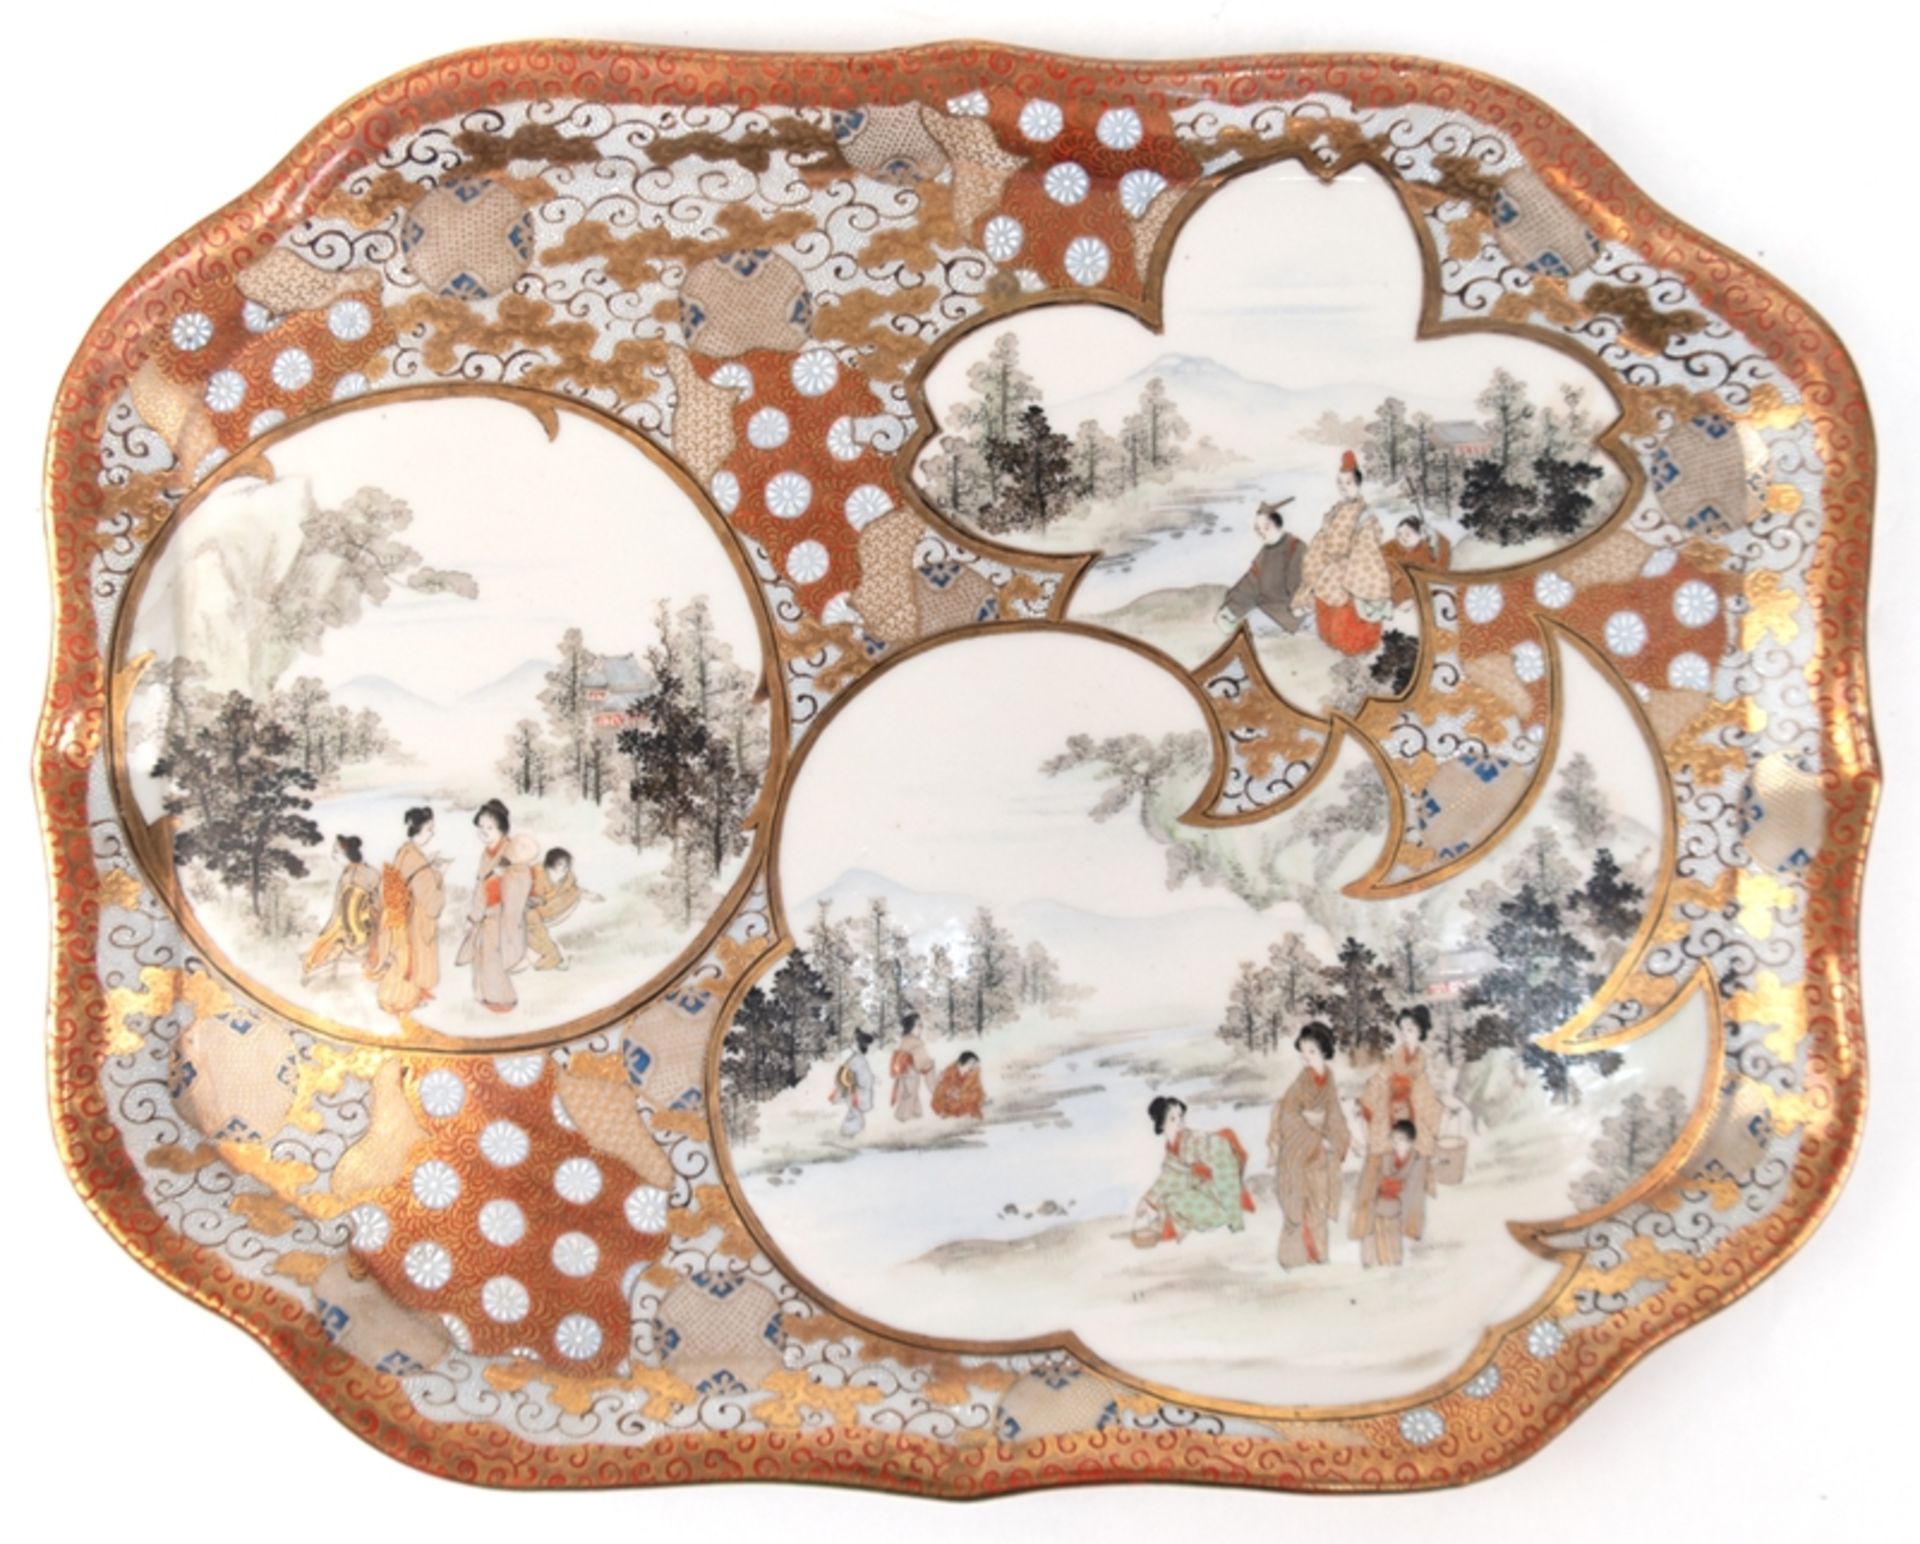 Tablett, vierpaßförmig, Japan Anfang 20. Jh., Brokat-Porzellan mit sehr feiner Malerei, Landschafts